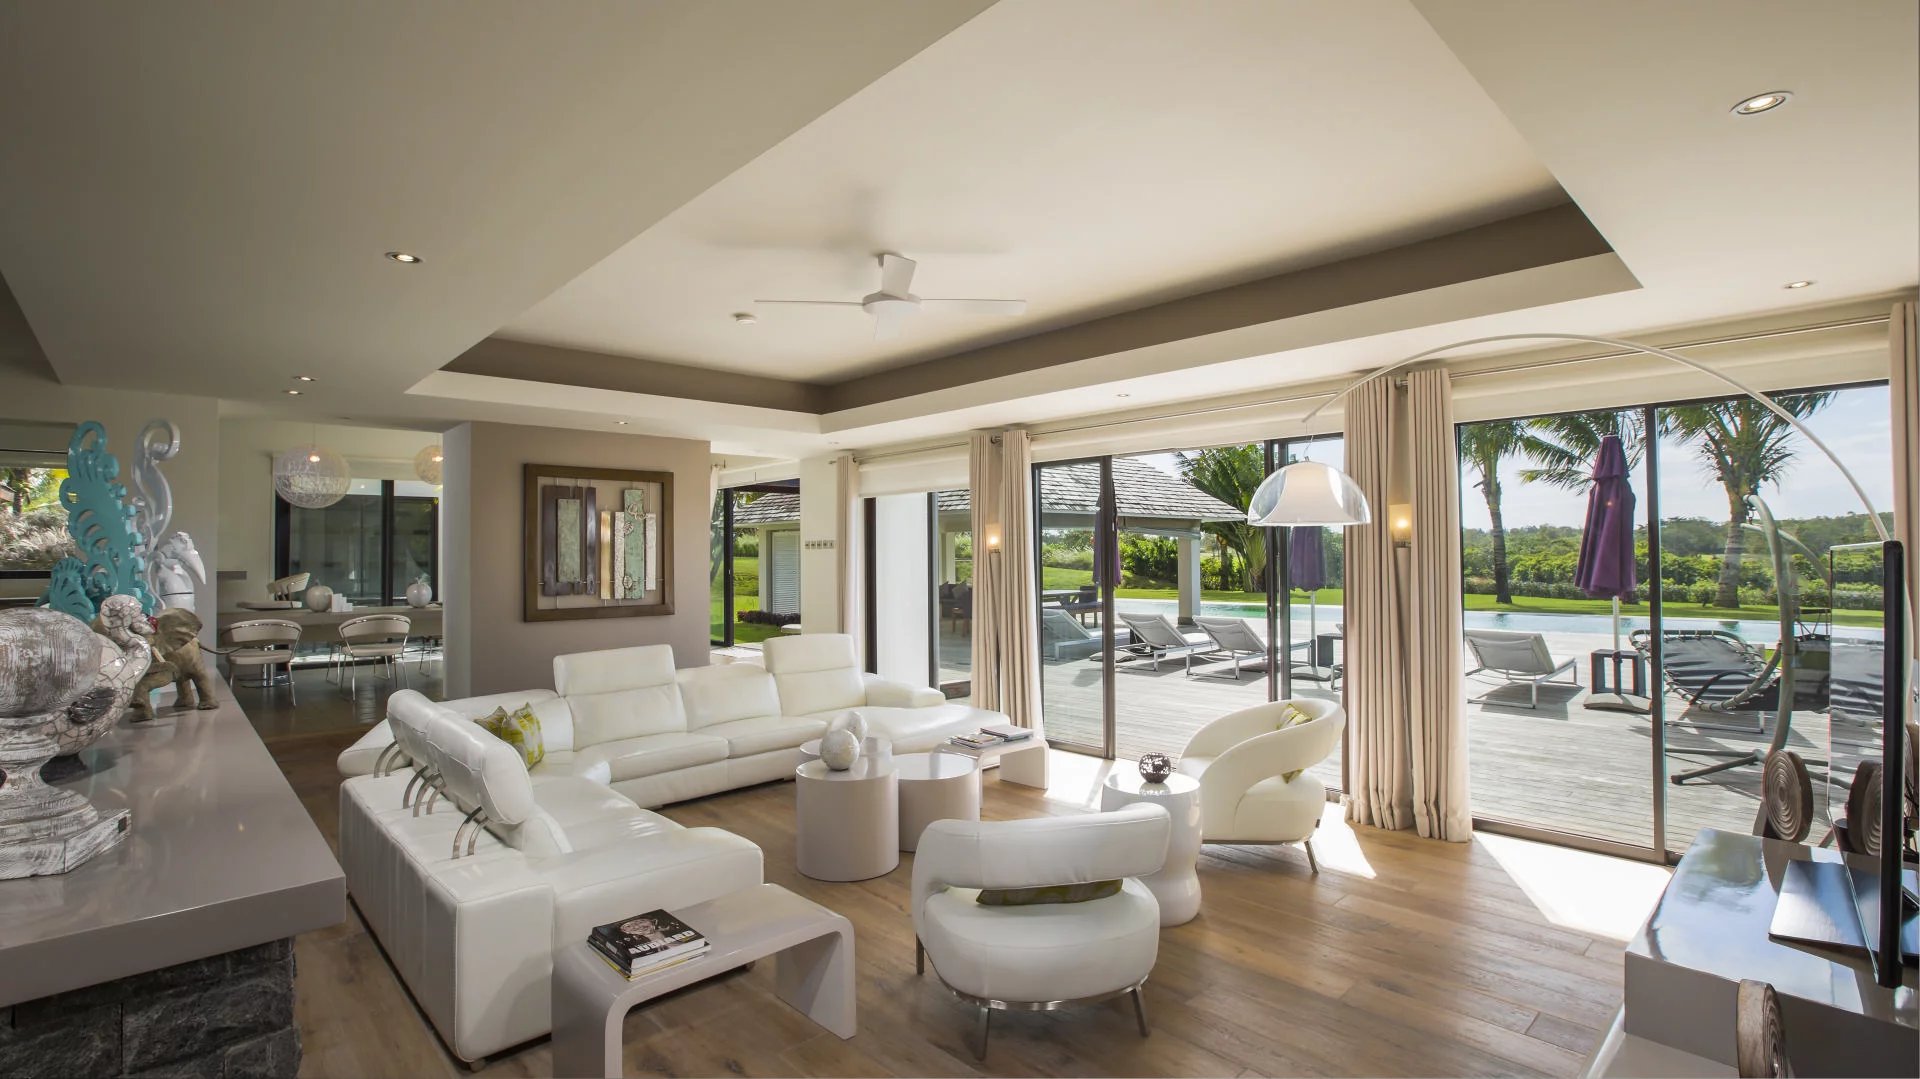 BBEAU CHAMP - Prestigious villa located in a golf domain - 5 bedrooms